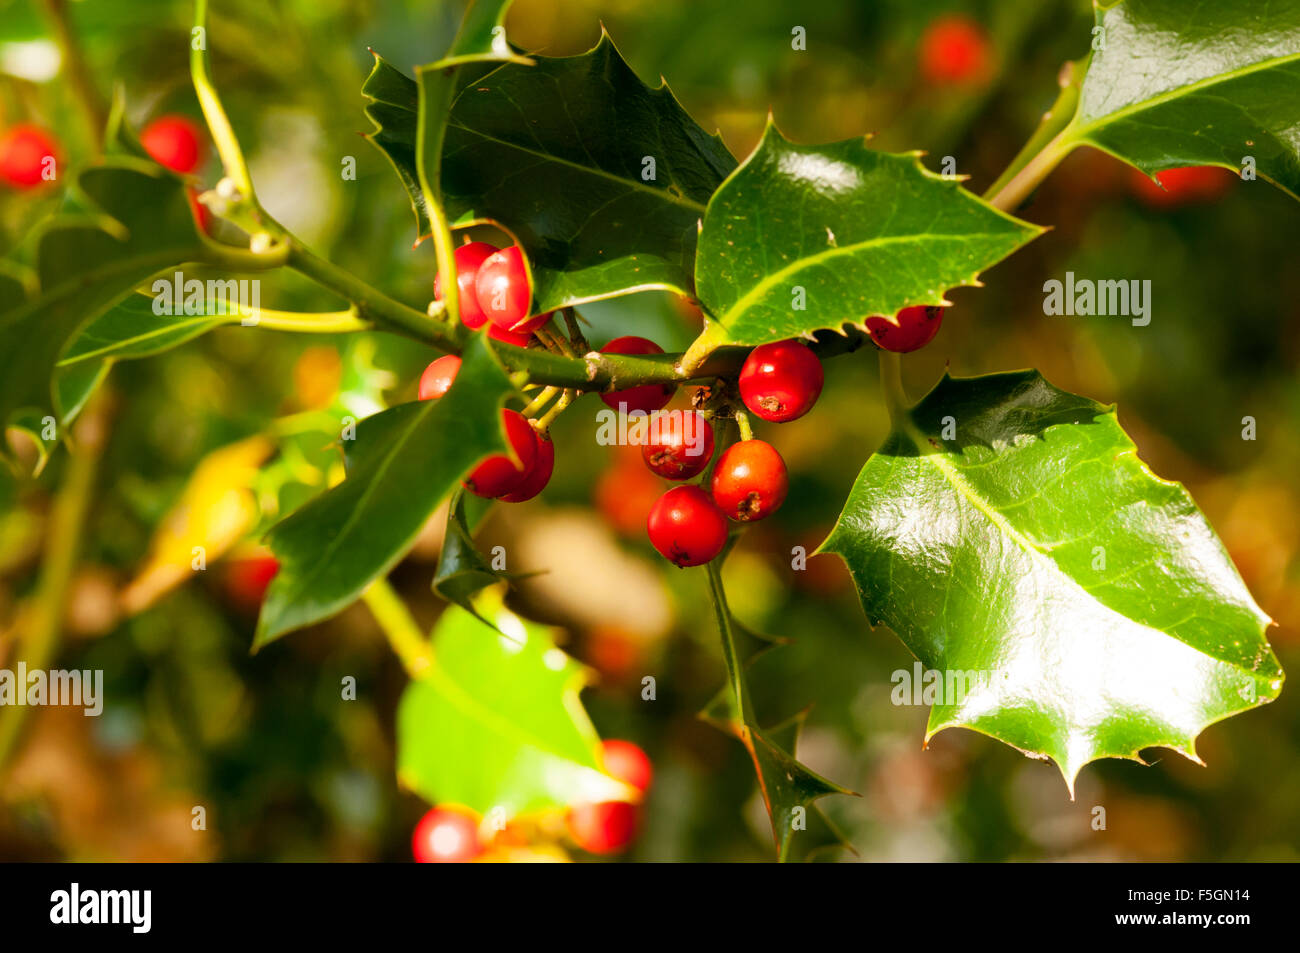 Red holly bacche con foglie verdi. Foto Stock